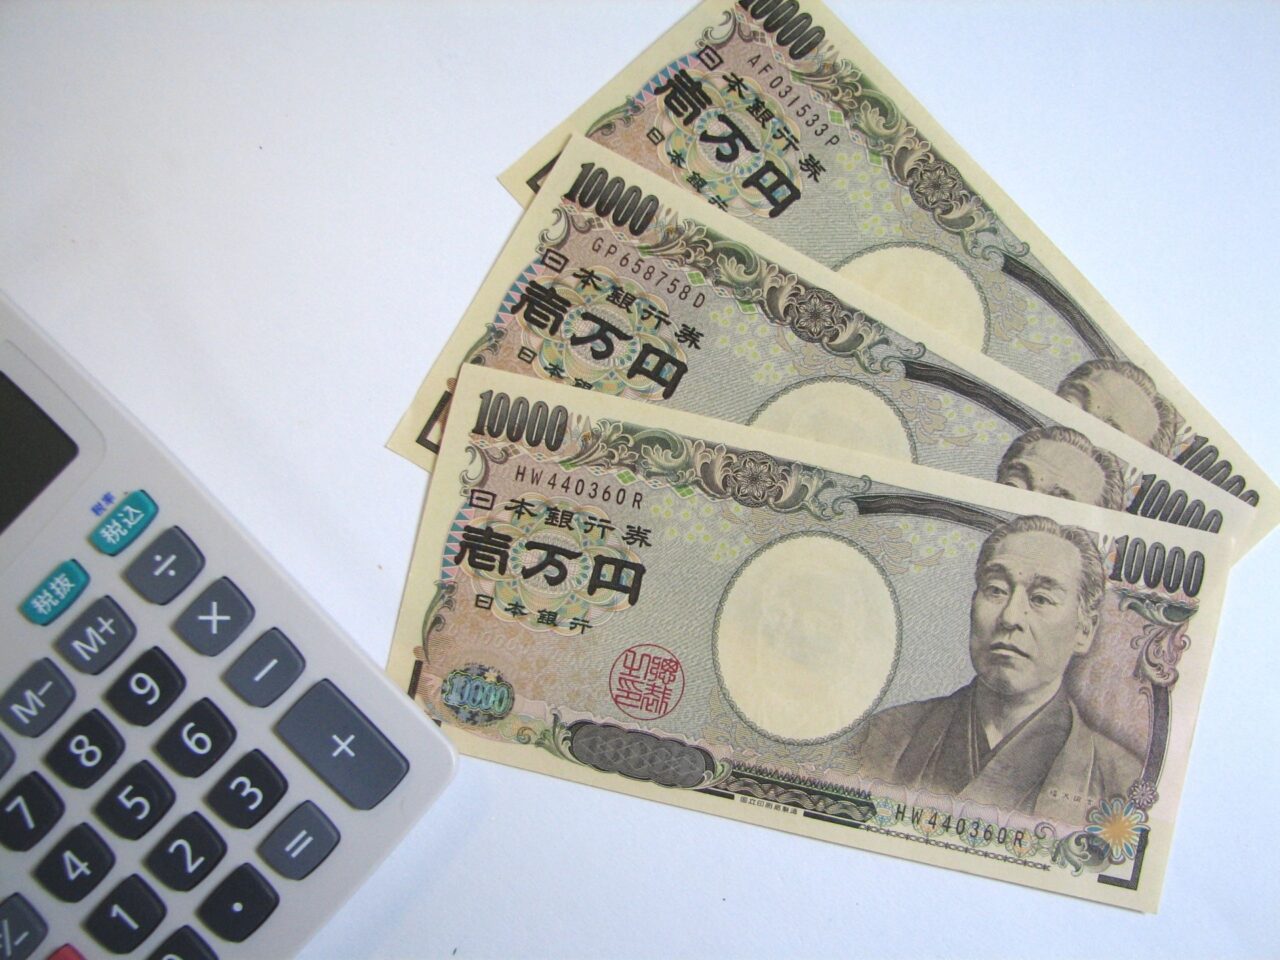 一万円札と電卓